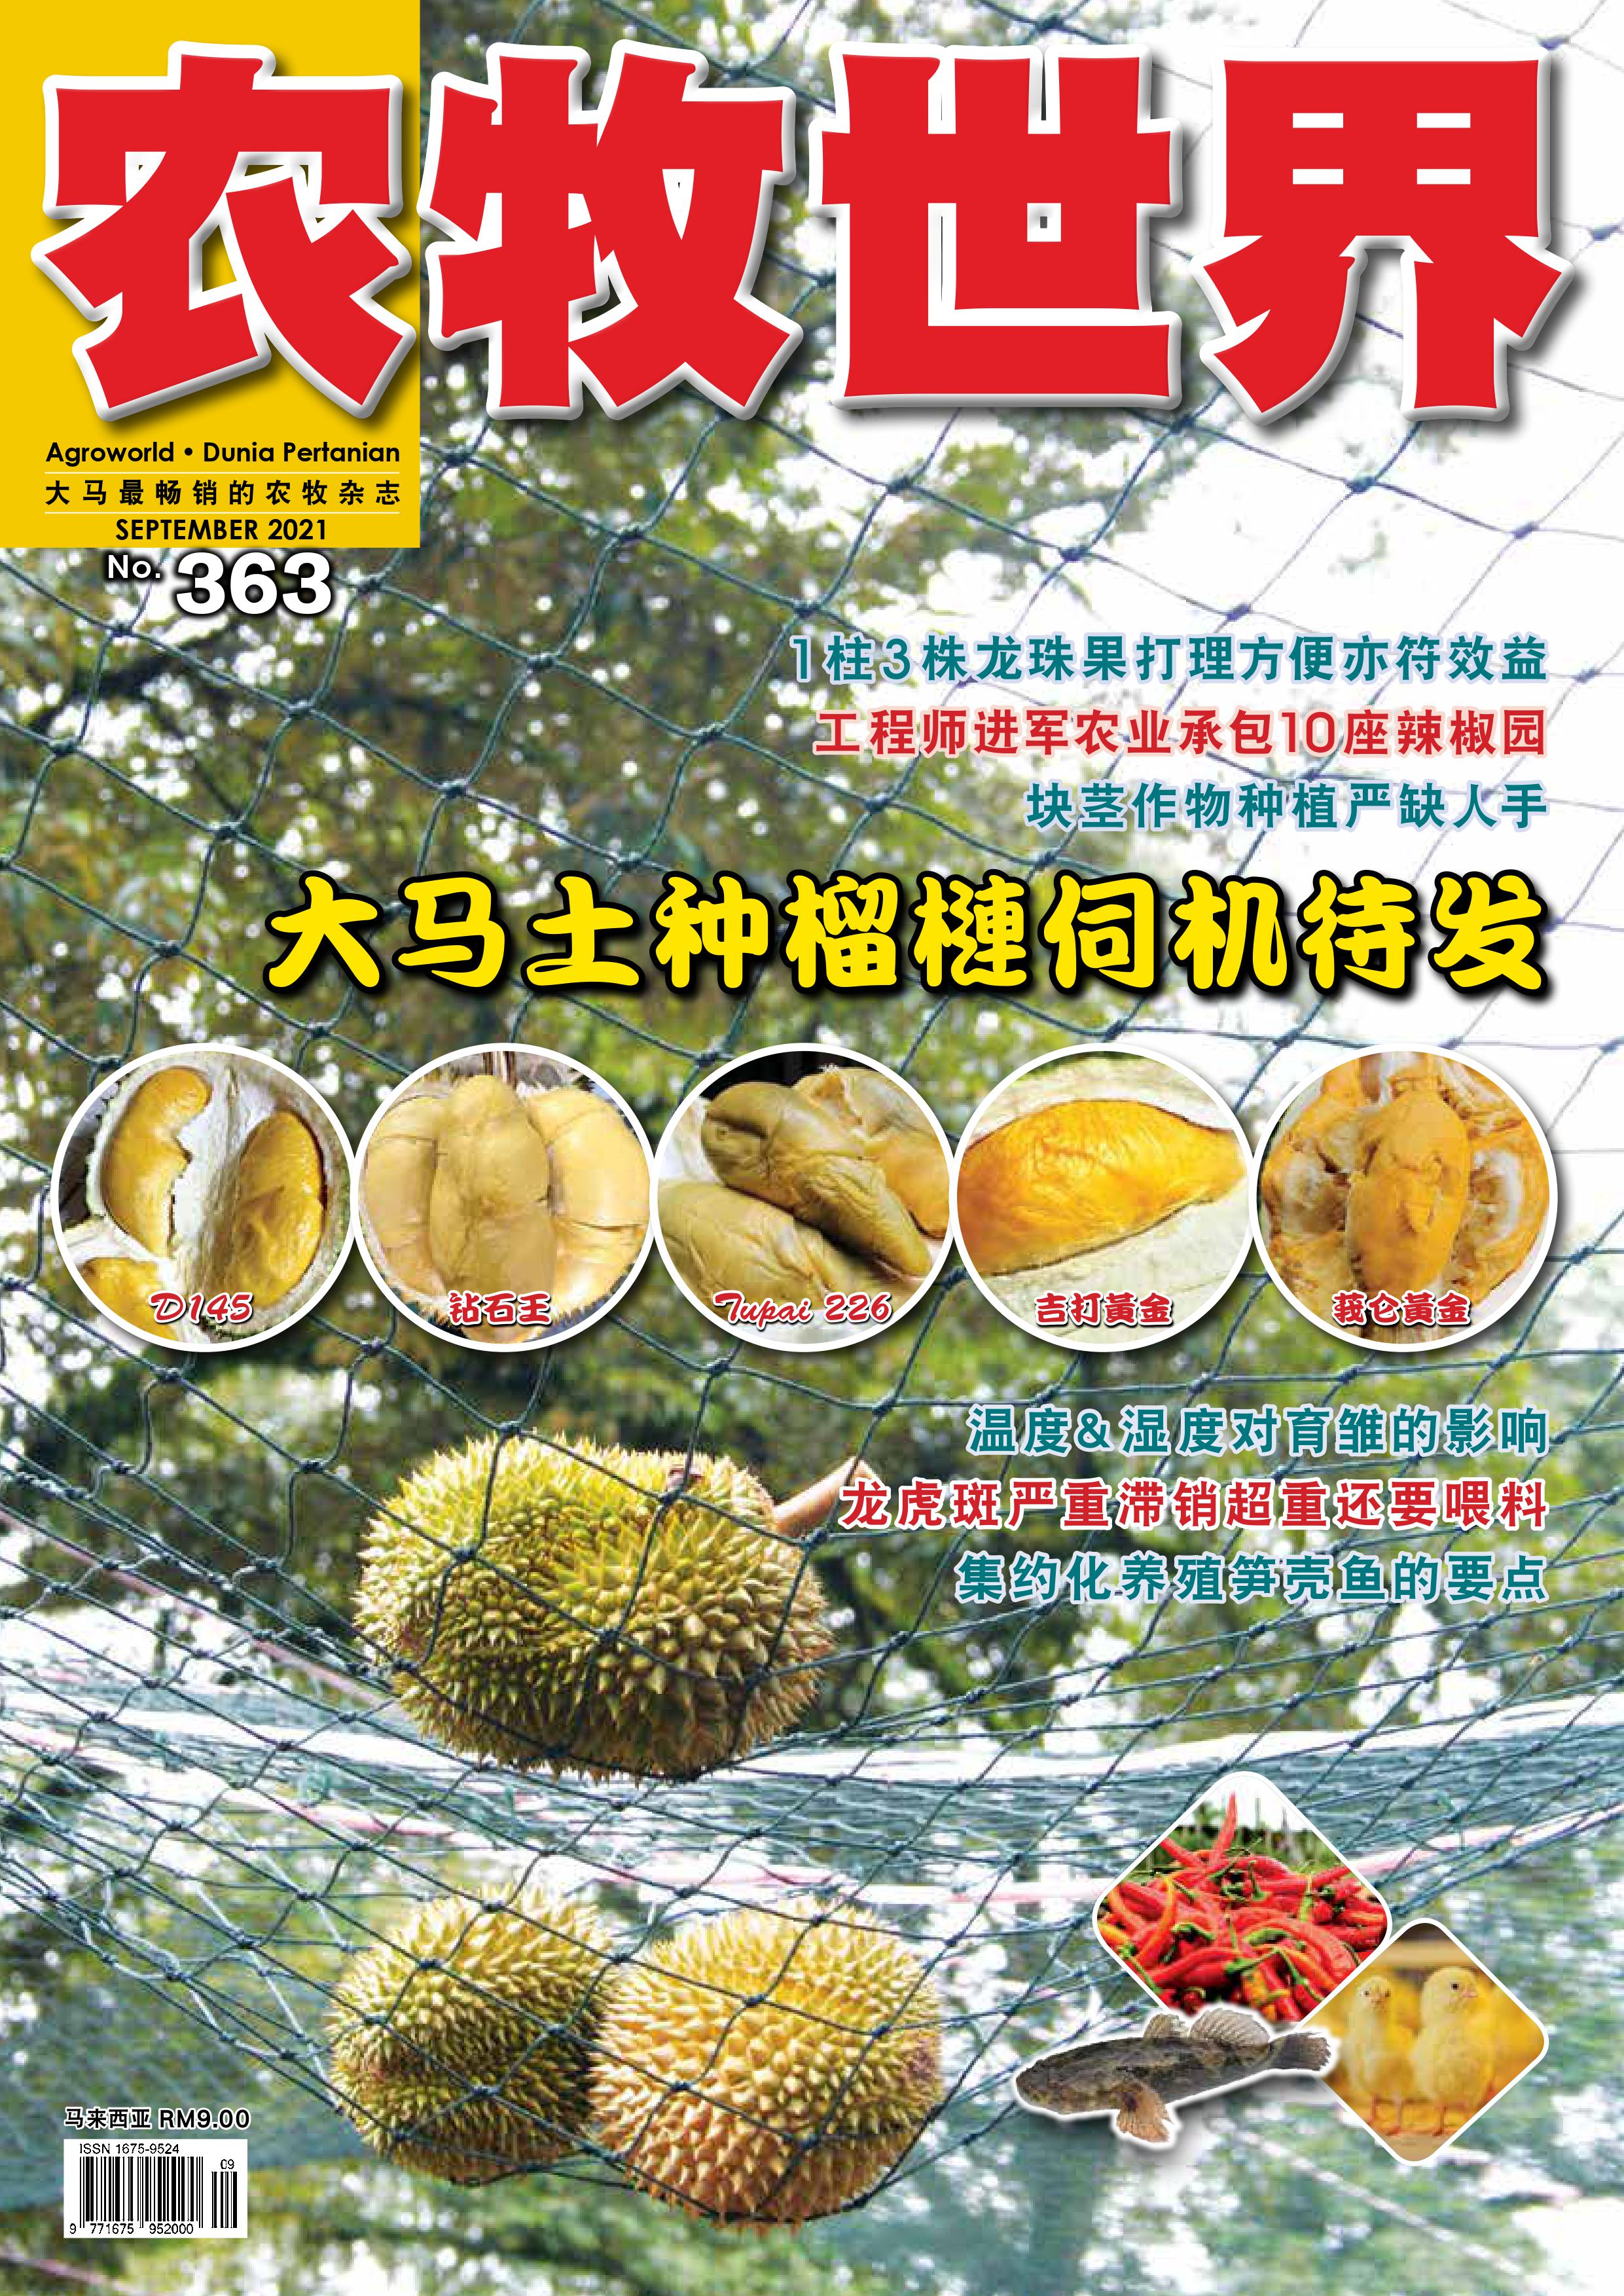 杂志：马来西亚的榴莲生产 - 农牧世界